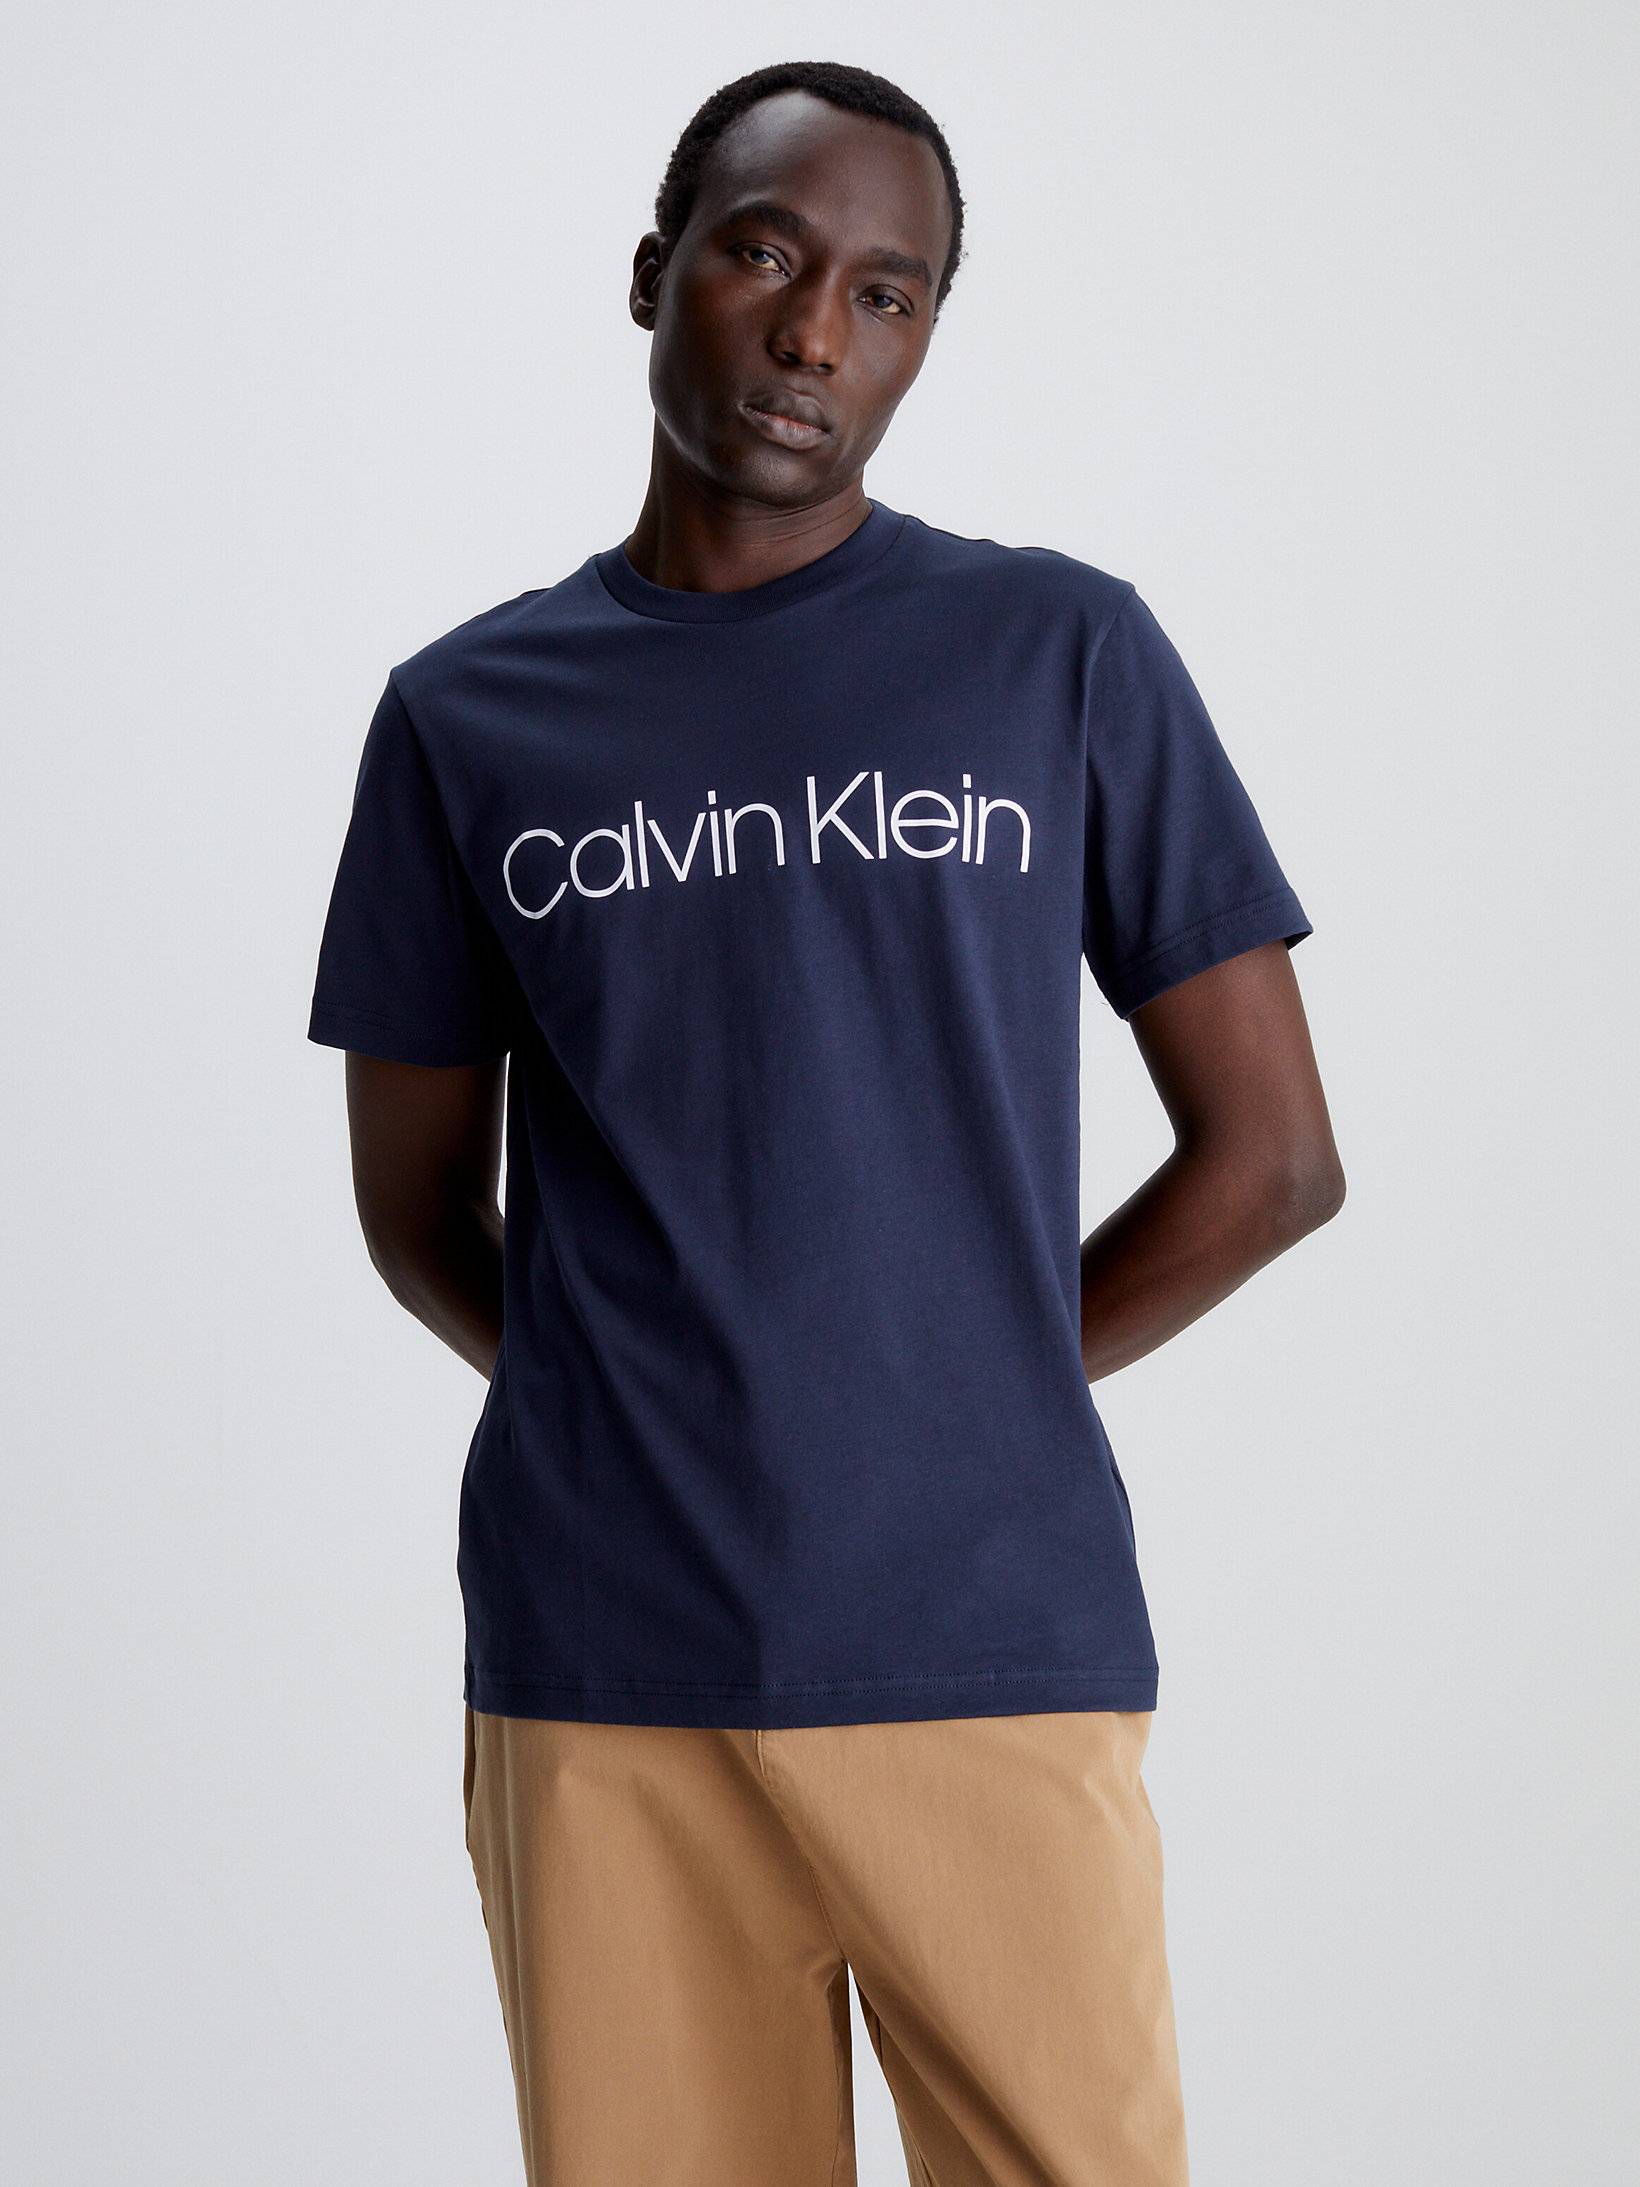 Top 63+ imagen buy calvin klein t shirt